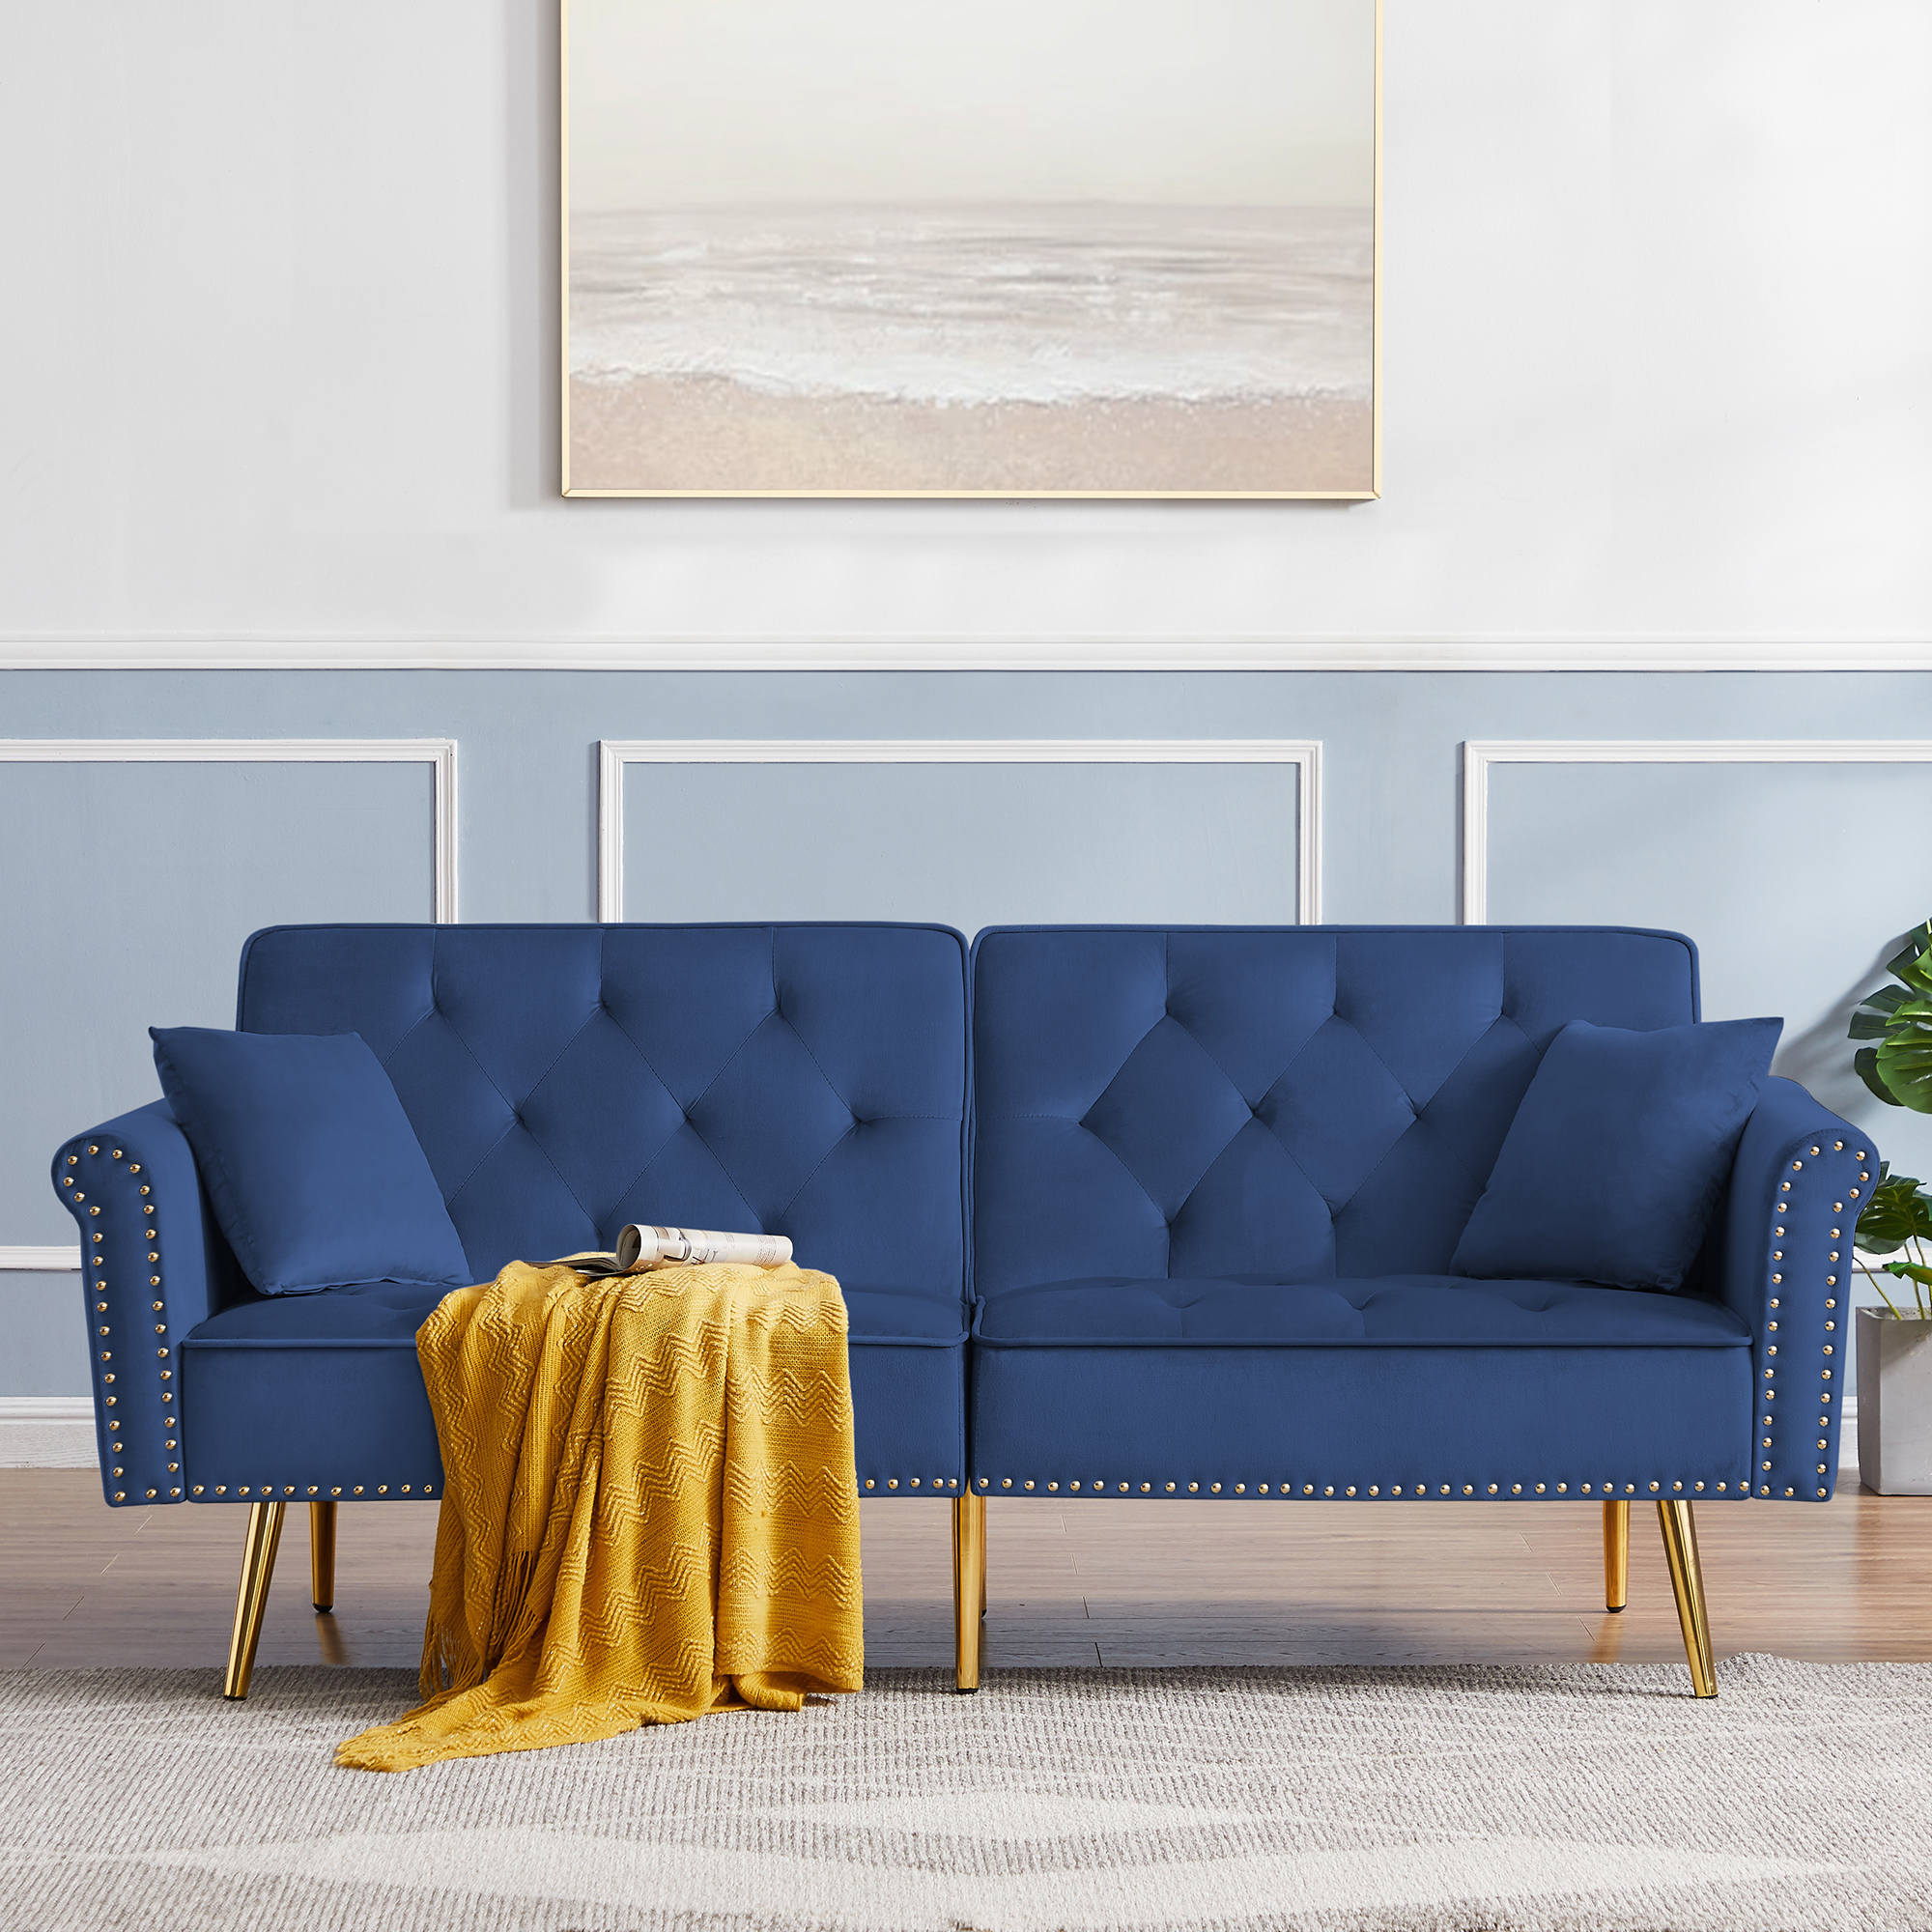 Where to Buy a Velvet Sofa: The Best Expert Picks